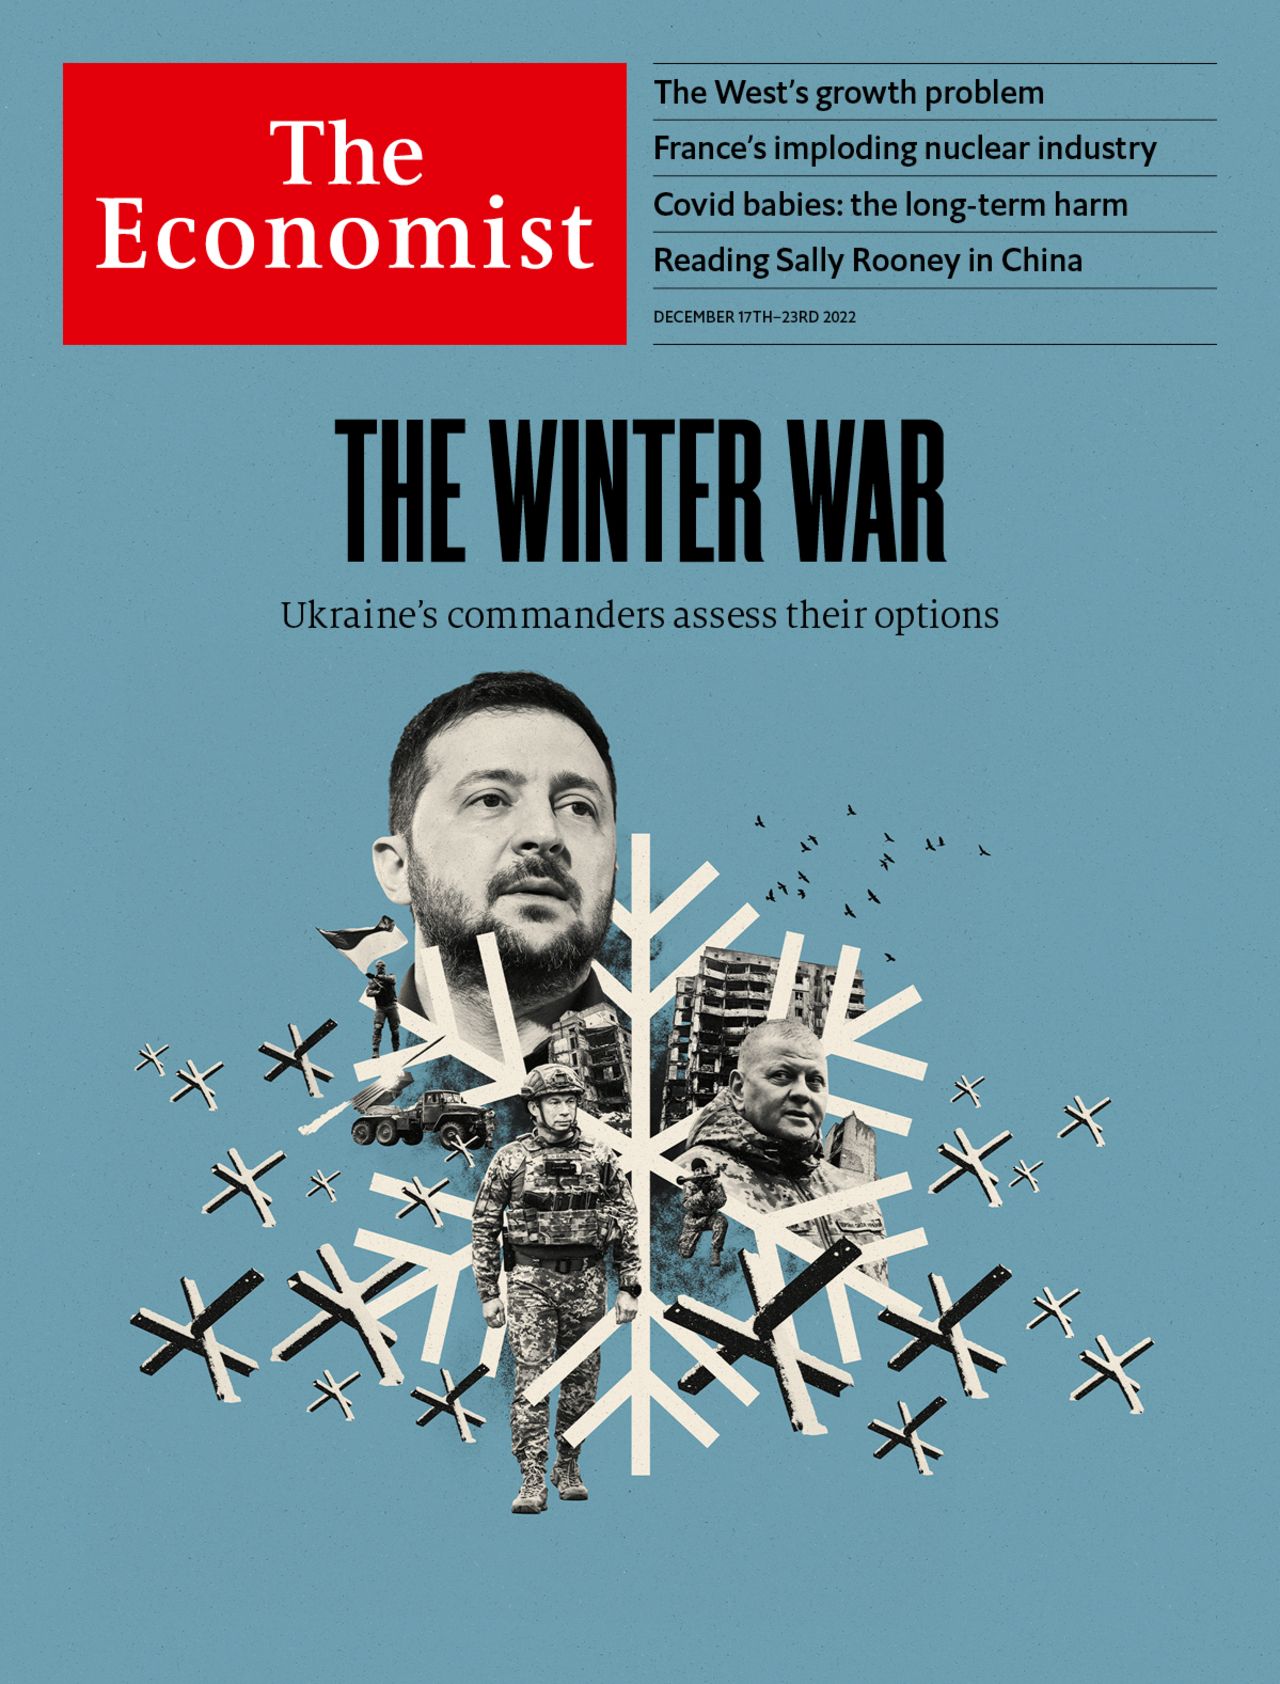 The winter war